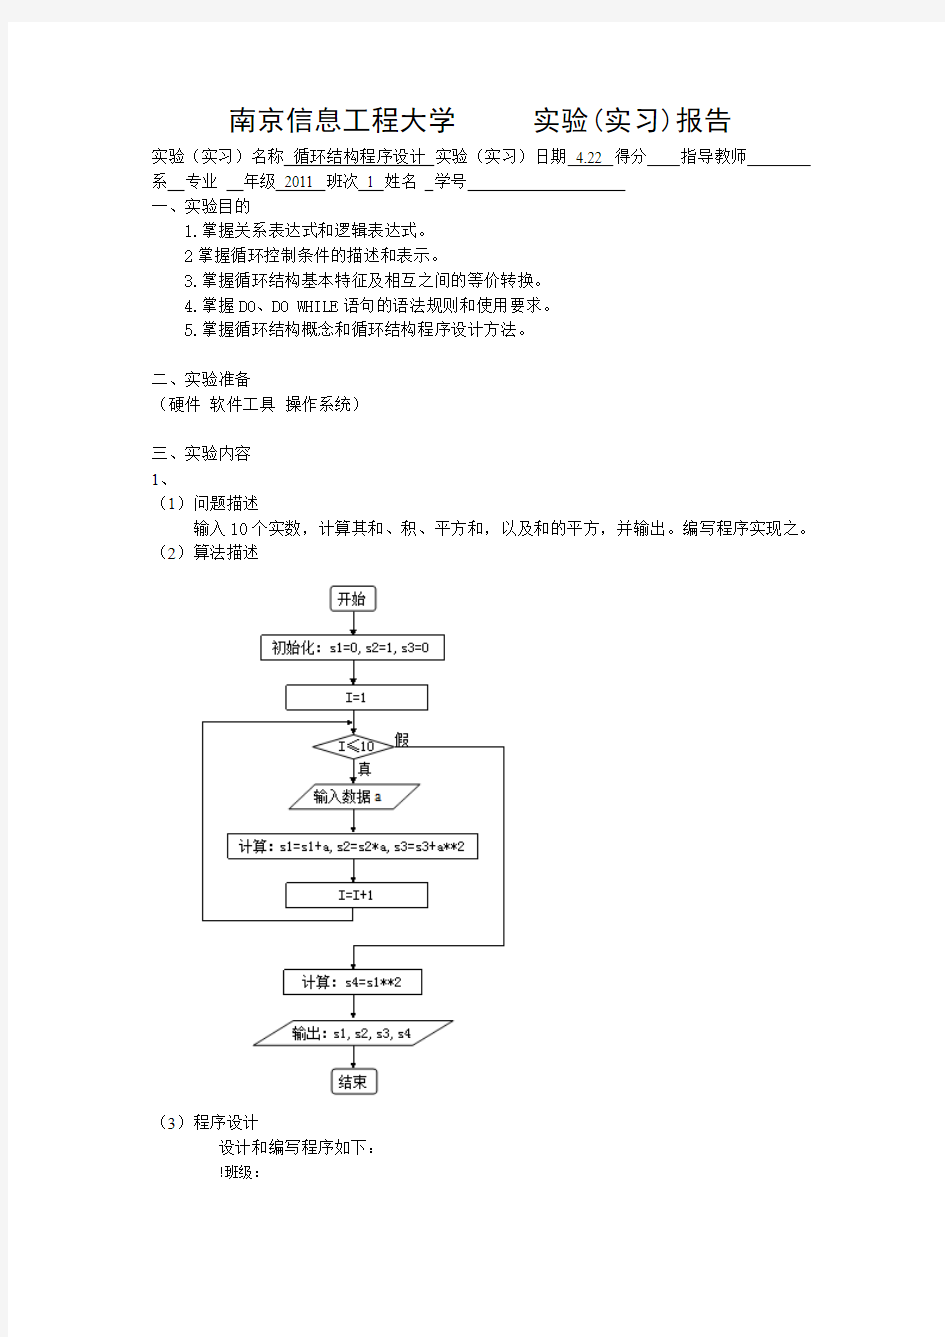 循环结构程序设计例子